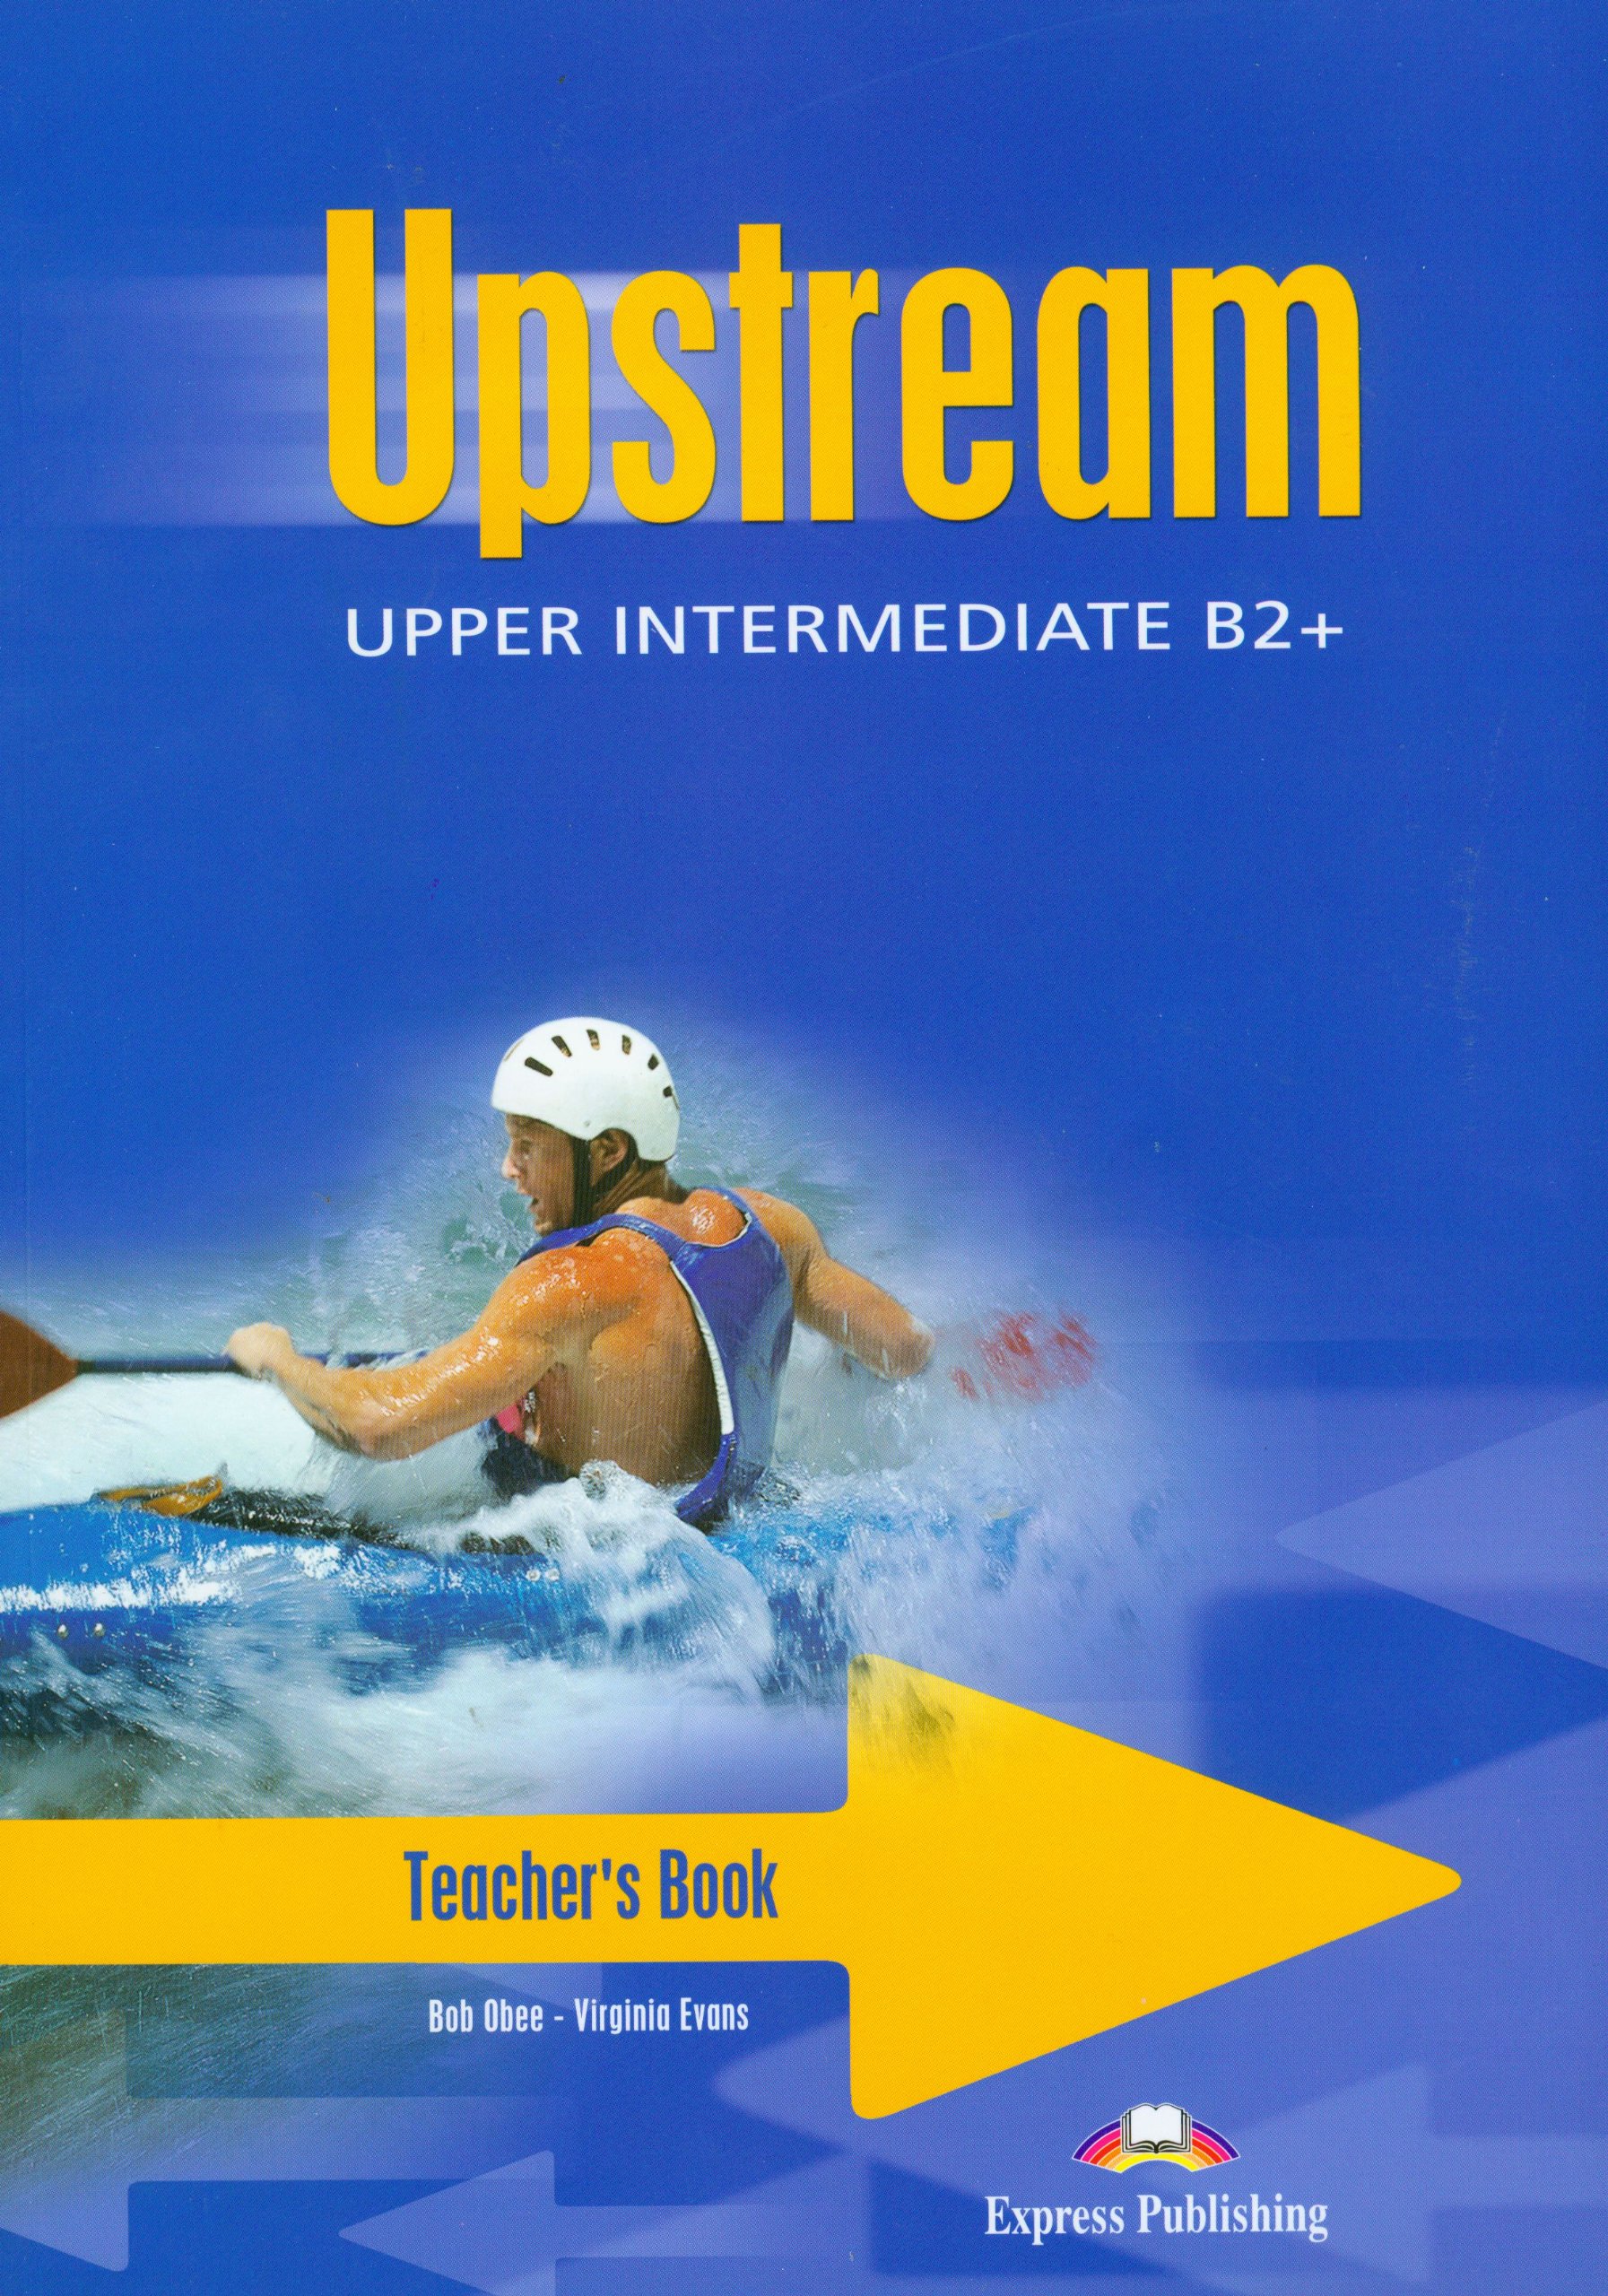 Upstream elementary. Upstream Intermediate teacher's book. Upstream Intermediate b2 student's book. Upstream учебник 1. Учебник по английскому языку upstream.